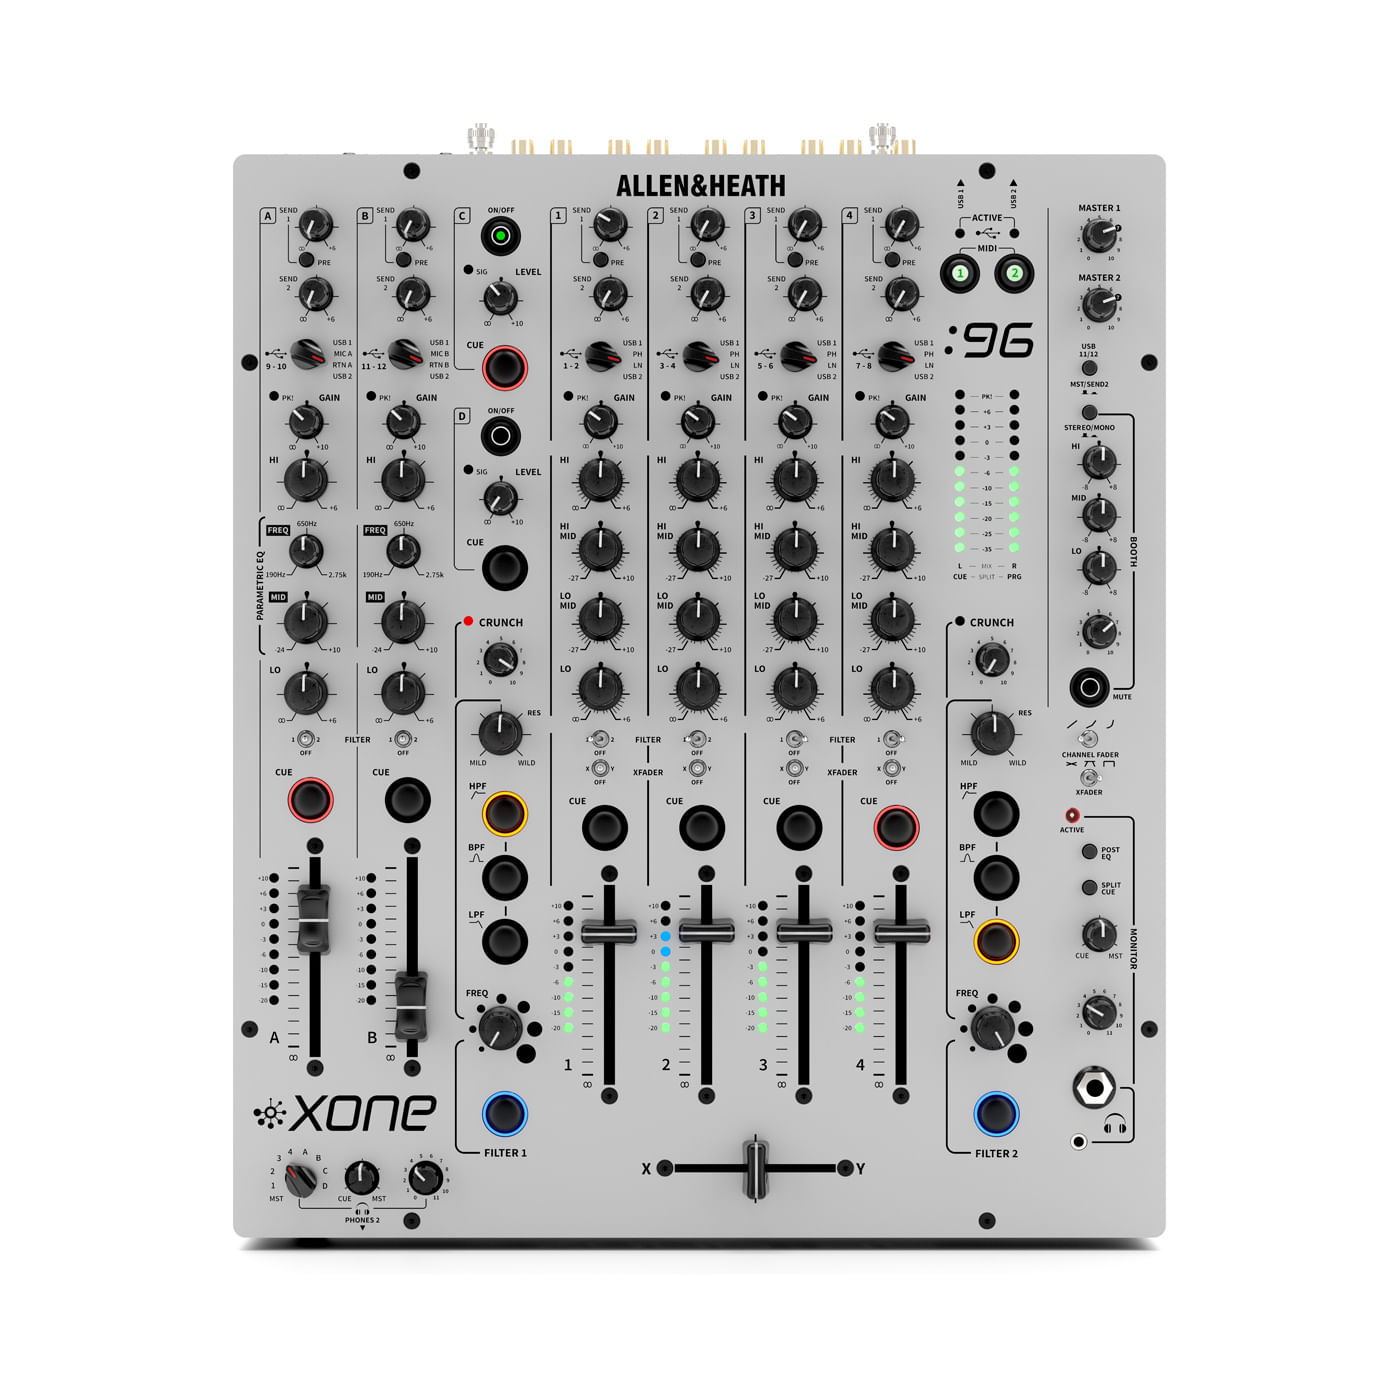 Mesas de mezcla de DJ para principiantes - Sonority